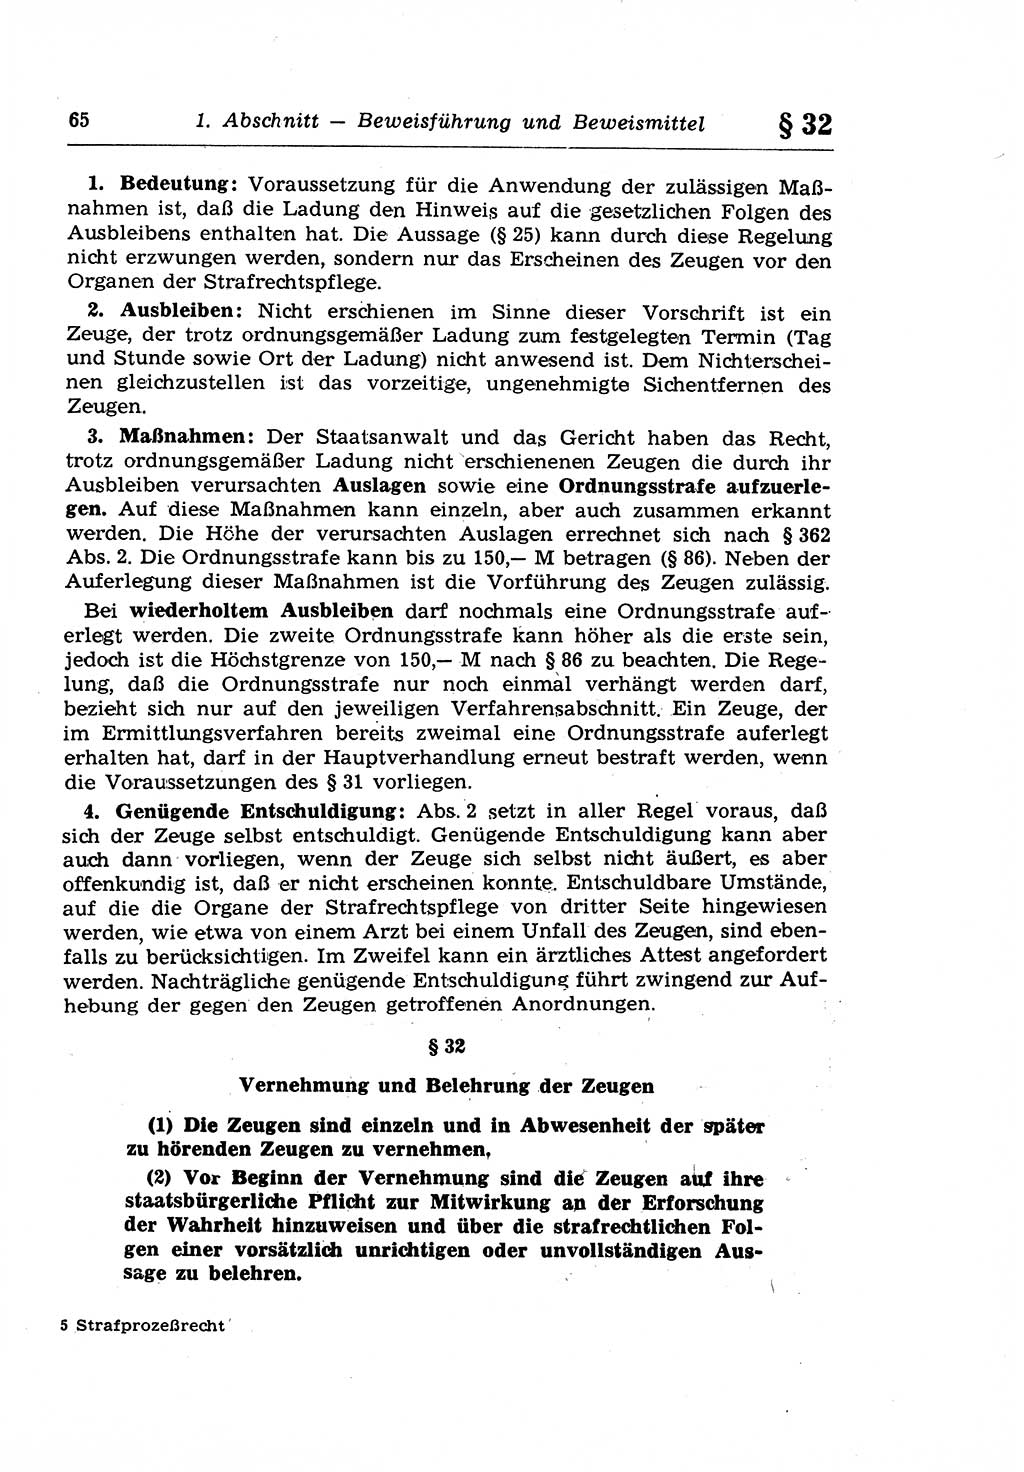 Strafprozeßrecht der DDR (Deutsche Demokratische Republik), Lehrkommentar zur Strafprozeßordnung (StPO) 1968, Seite 65 (Strafprozeßr. DDR Lehrkomm. StPO 19688, S. 65)